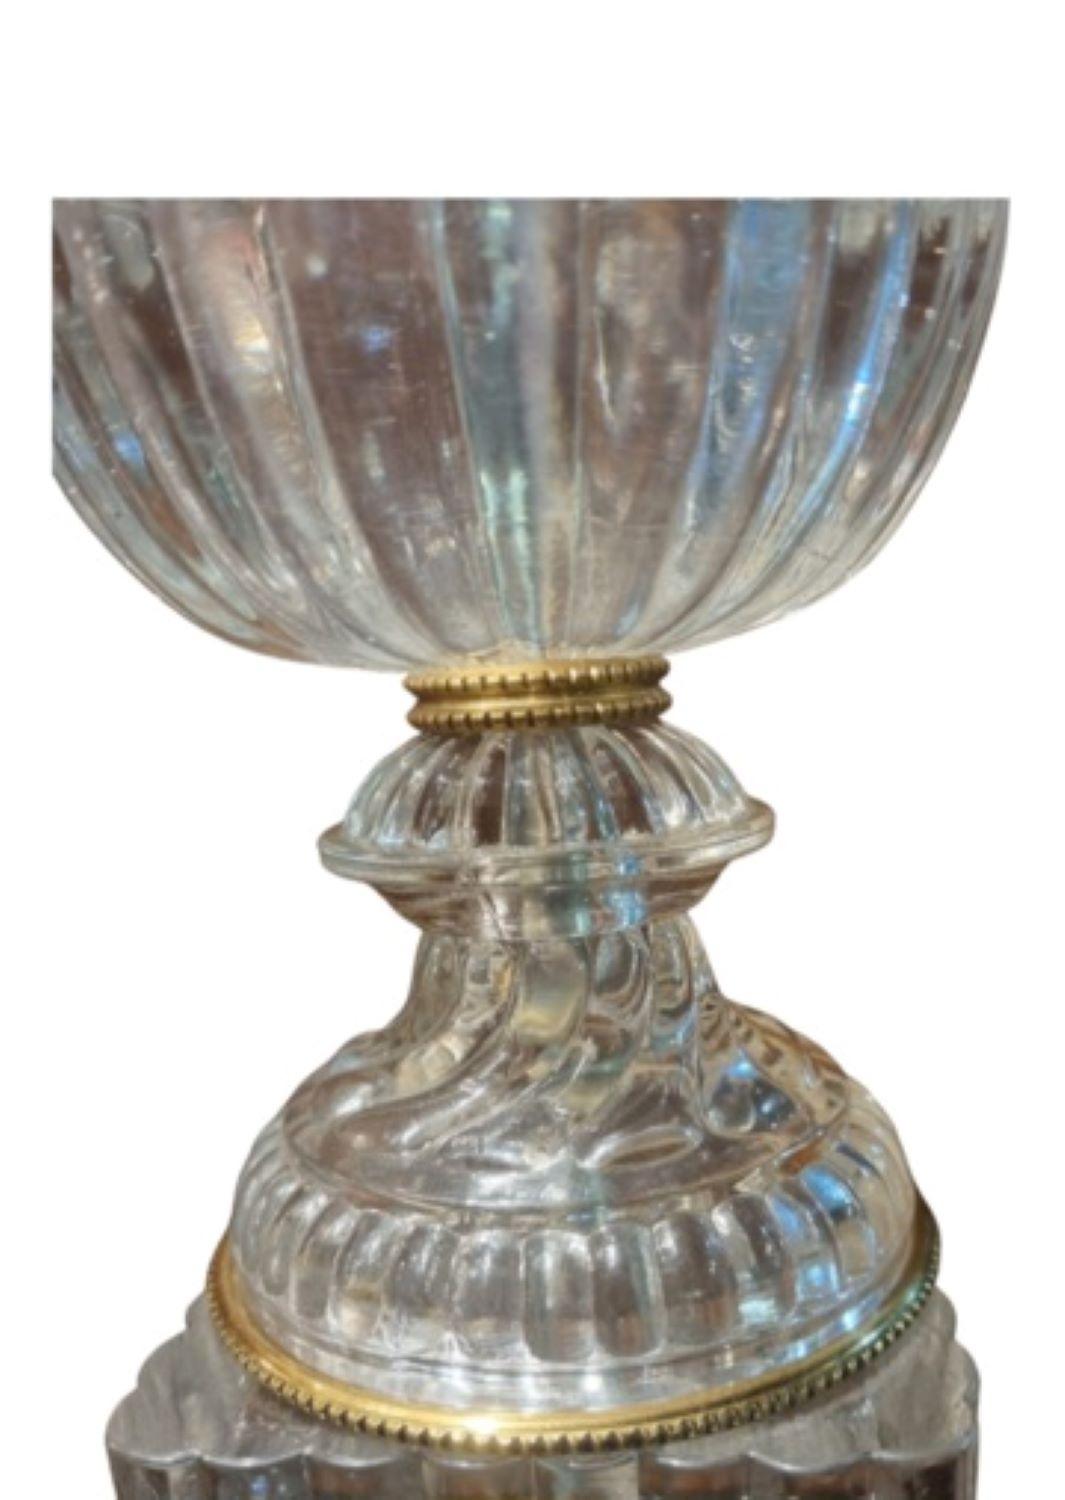 Paire de lampes de table en cristal en forme d'urne de style bohémien
Ces lampes sont d'une qualité étonnante et fabriquées en cristal épais.
Le cristal réfléchit la lumière, ce qui est très frappant lorsqu'il est allumé.
Abat-jour non inclus